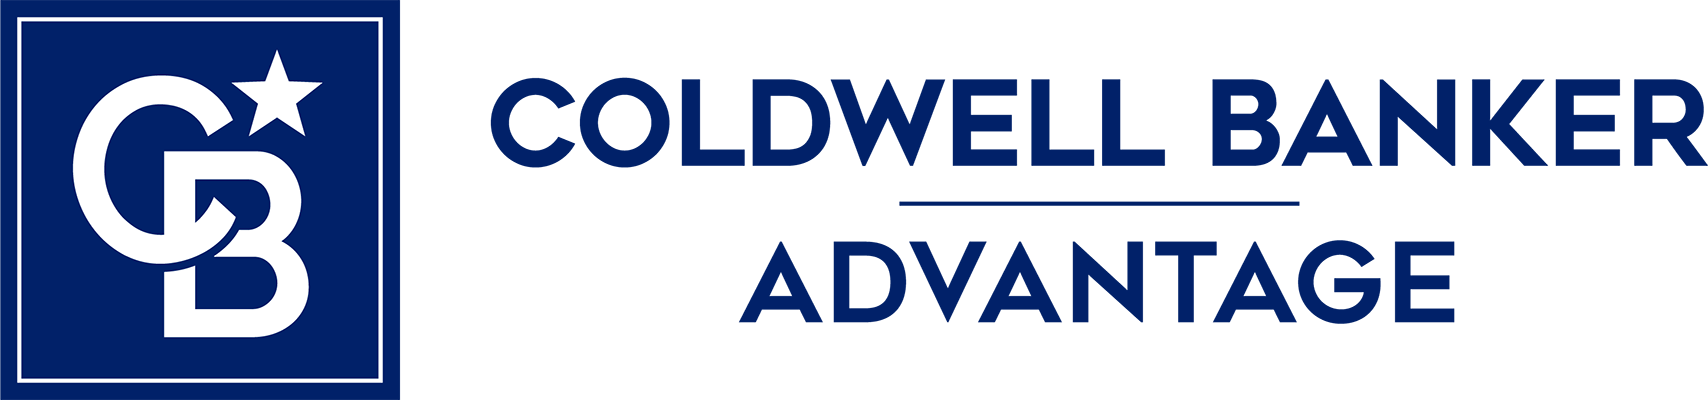 PJ Sayah - Coldwell Banker Advantage Logo